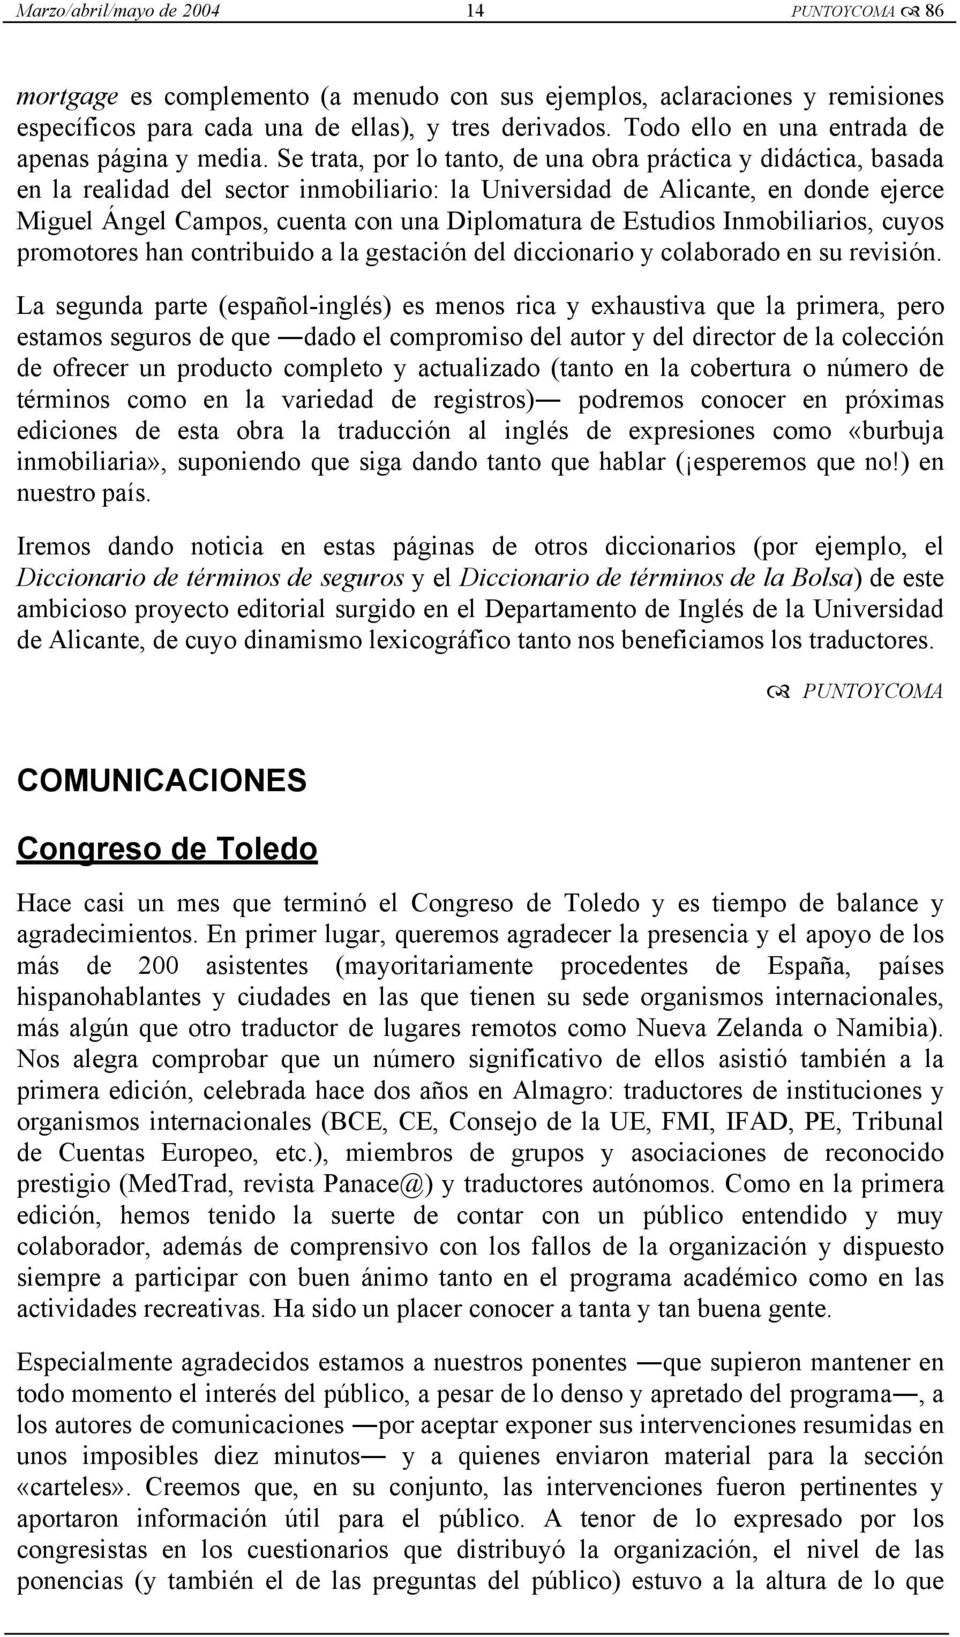 Se trata, por lo tanto, de una obra práctica y didáctica, basada en la realidad del sector inmobiliario: la Universidad de Alicante, en donde ejerce Miguel Ángel Campos, cuenta con una Diplomatura de